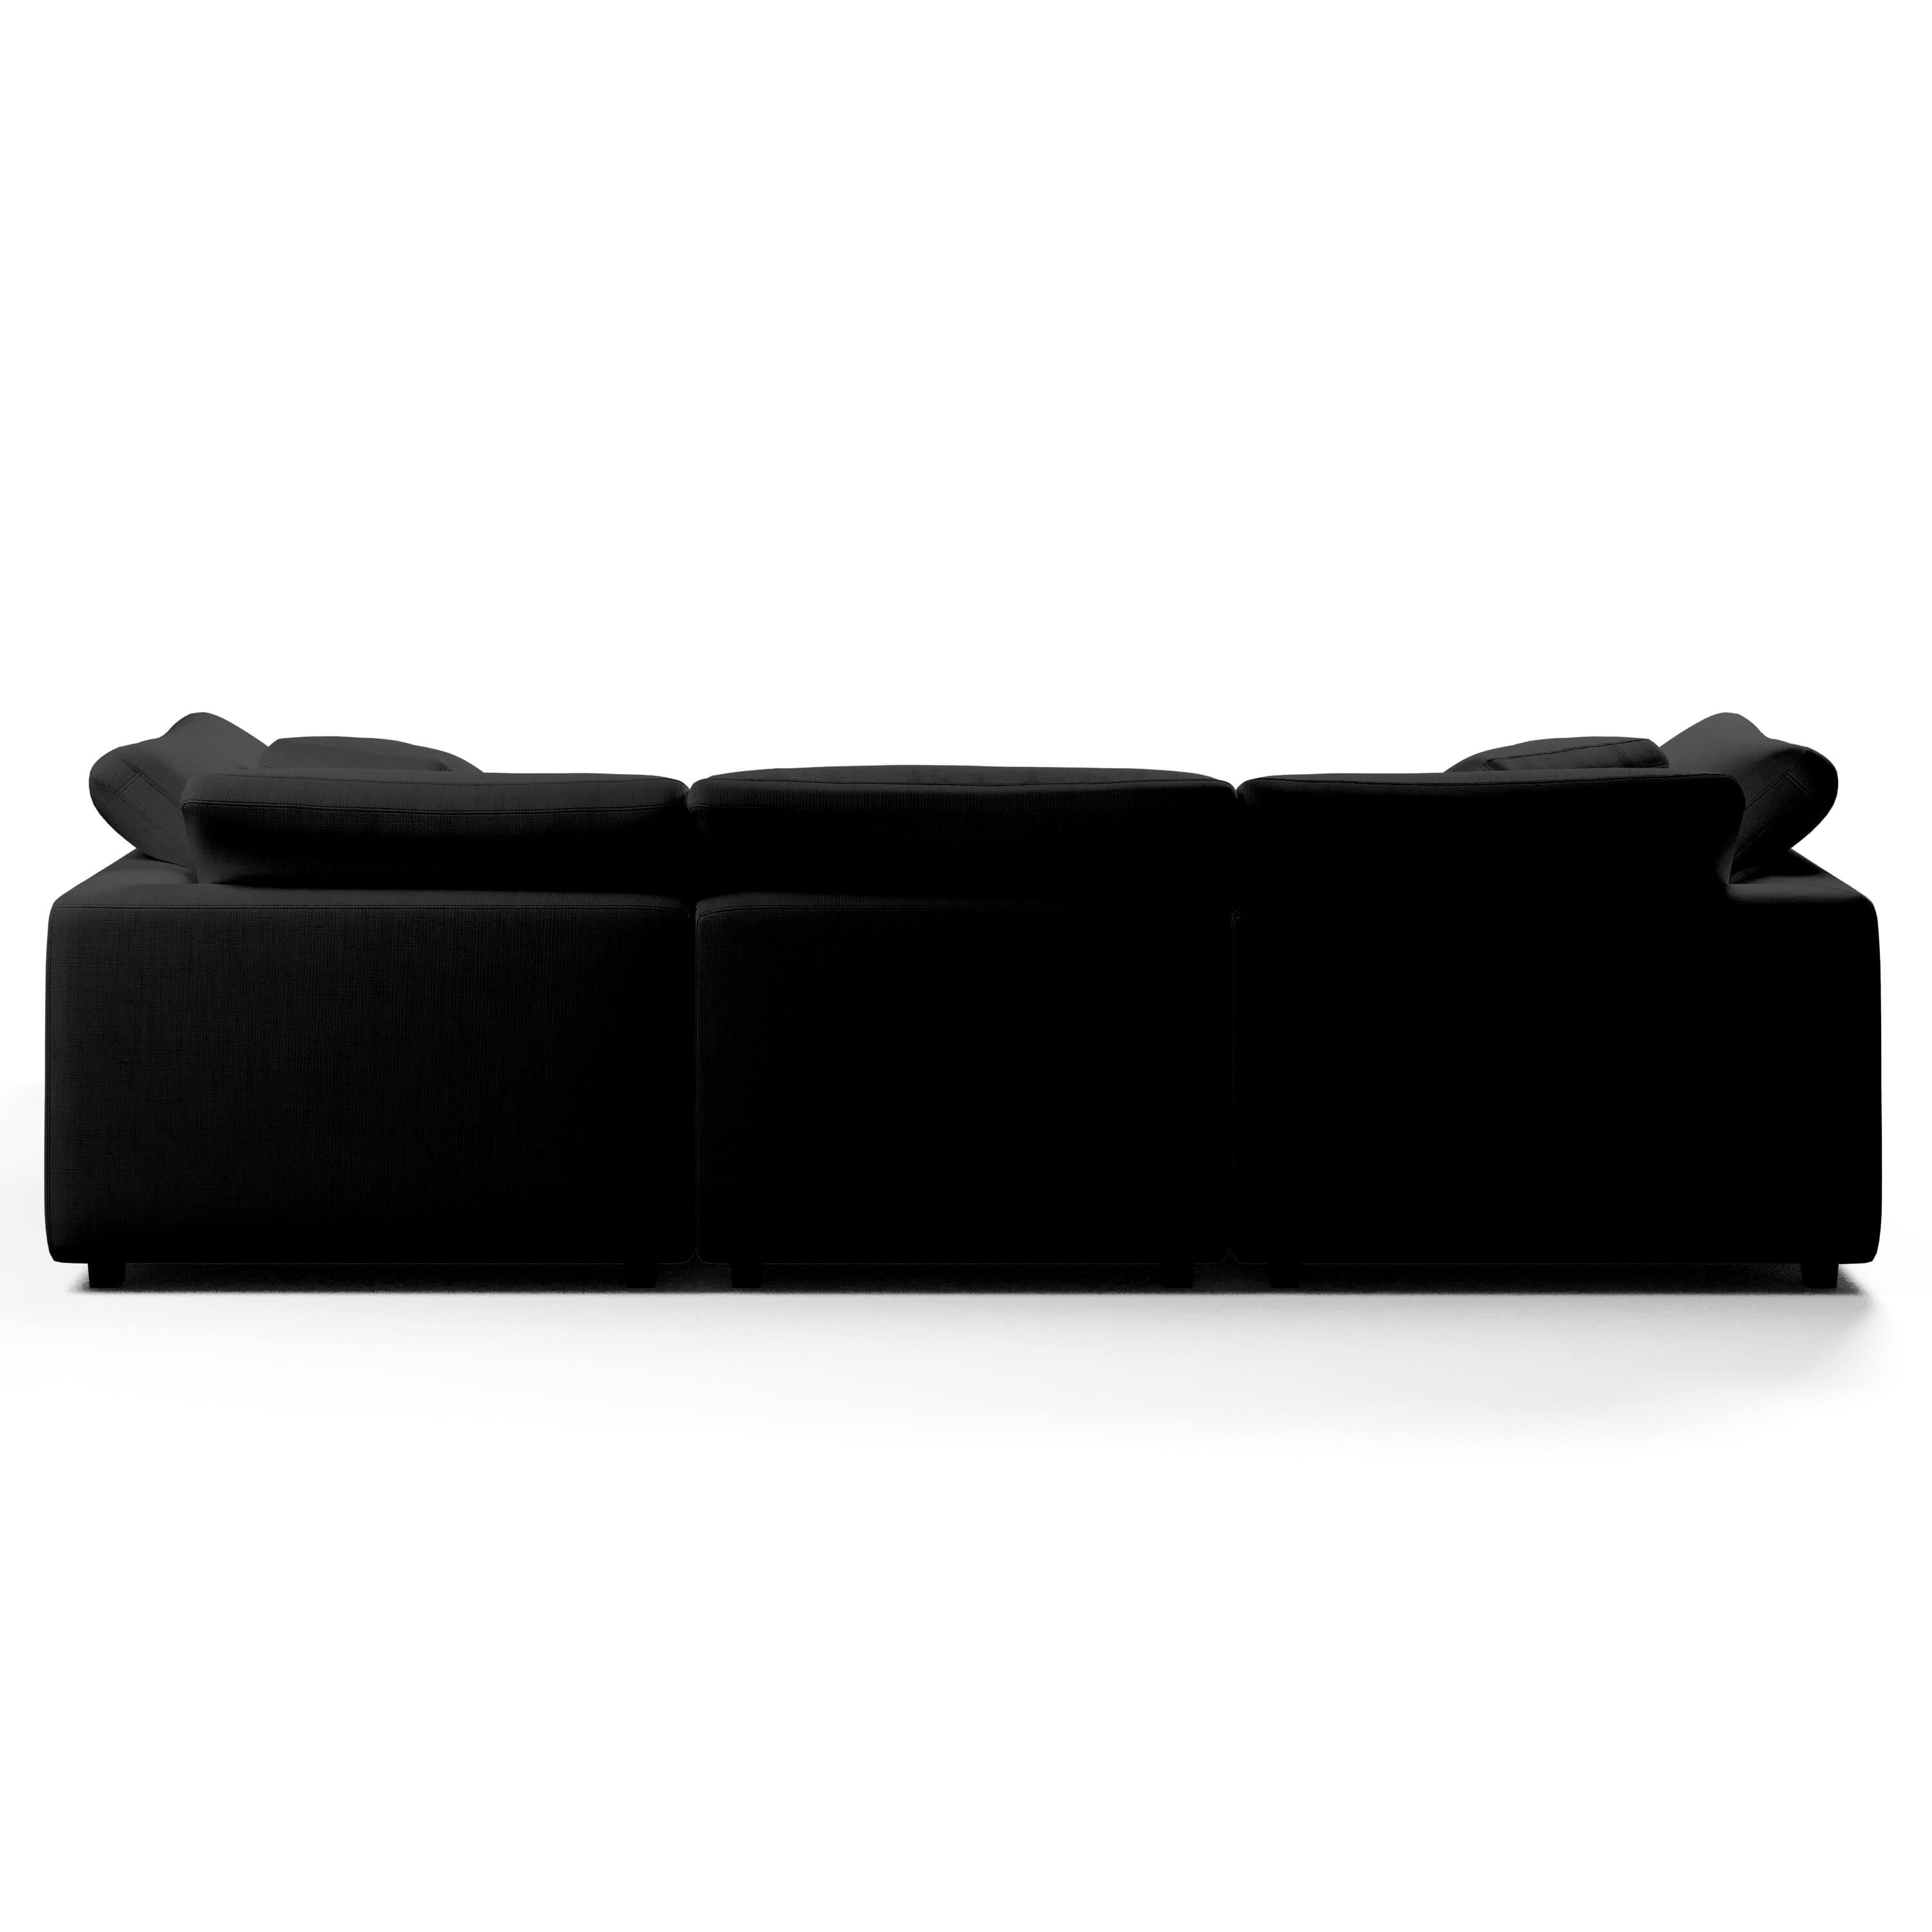 Comfy Modular Sofa - 3-Seater U-Sectional